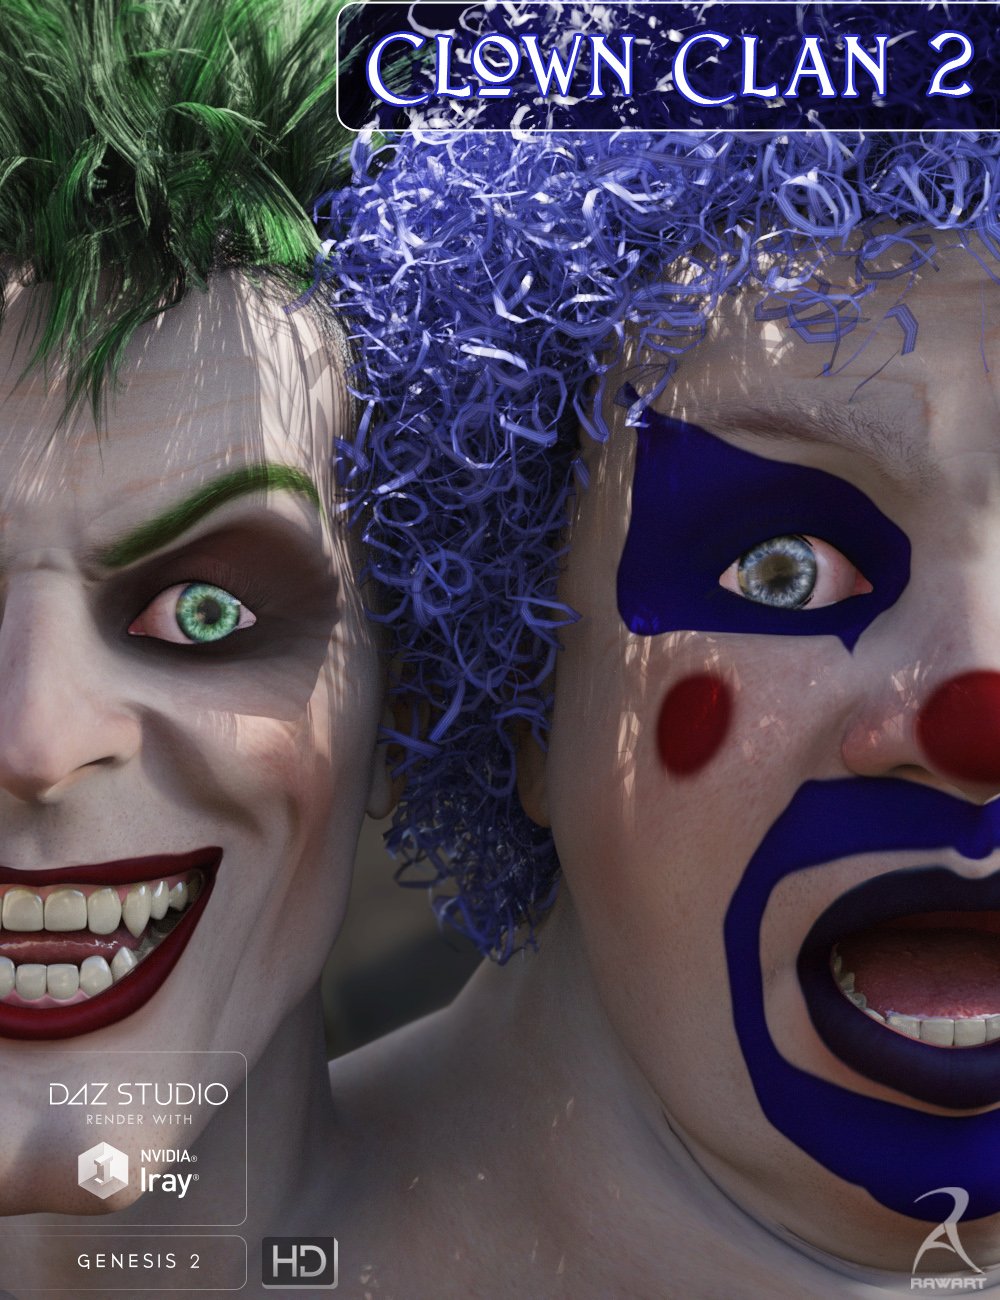 Clown Clan 2 HD by: RawArt, 3D Models by Daz 3D